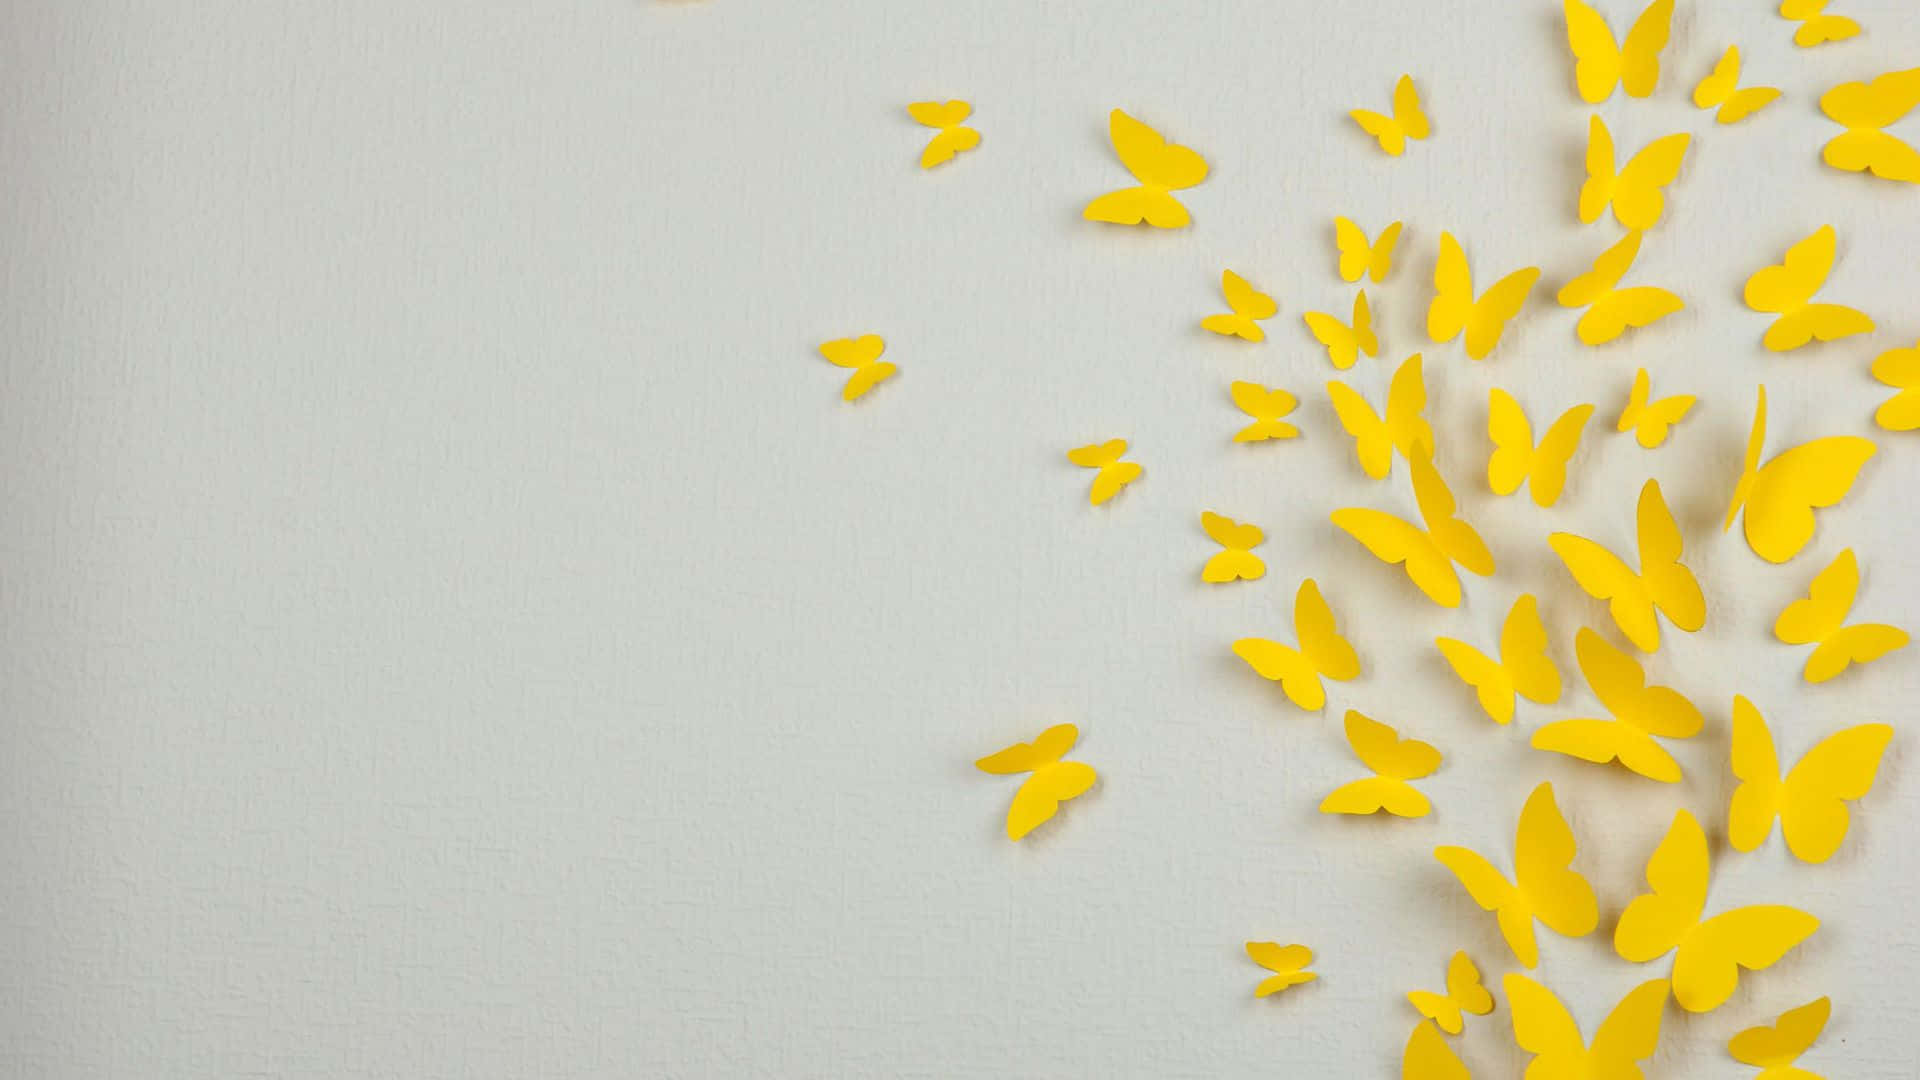 "Two Beautiful Yellow Butterflies in Flight" Wallpaper